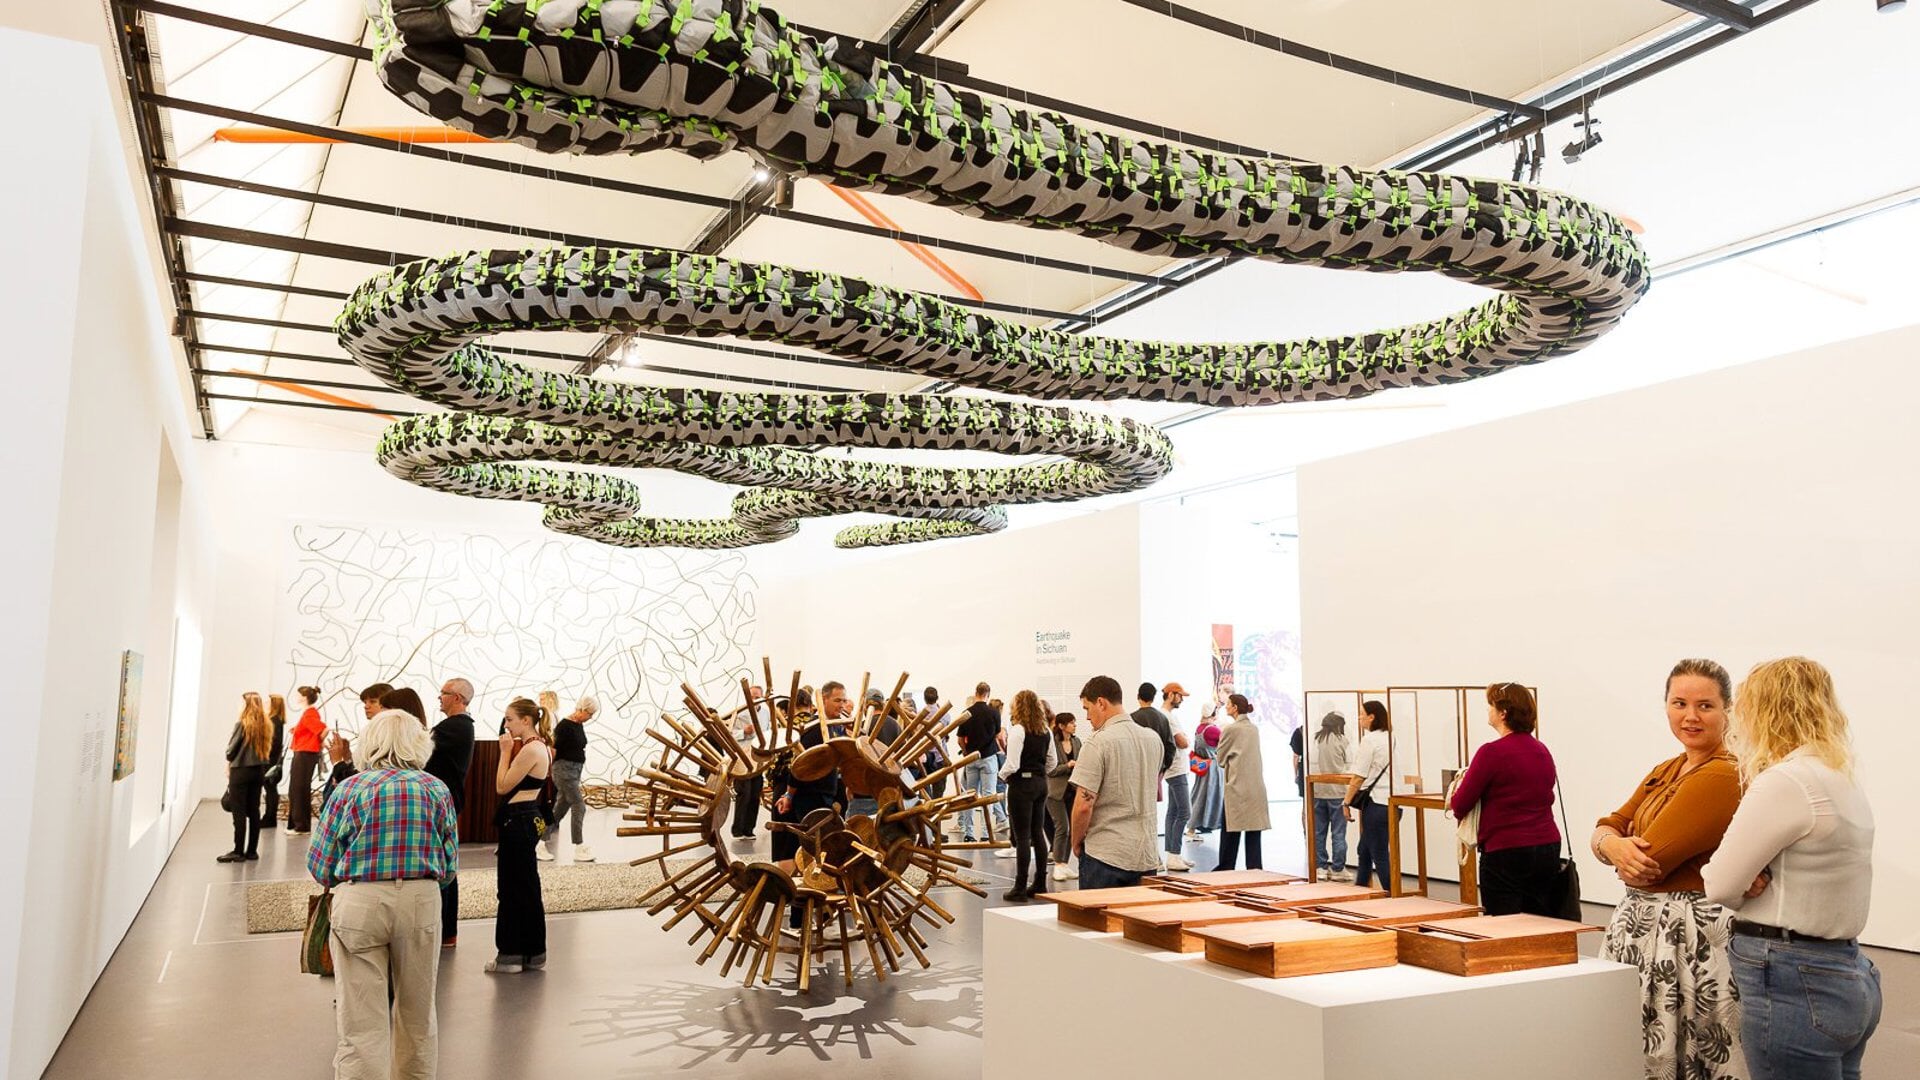 De expositie 'In search of humanity' in de Rotterdamse Kunsthal trekt veel bezoekers.